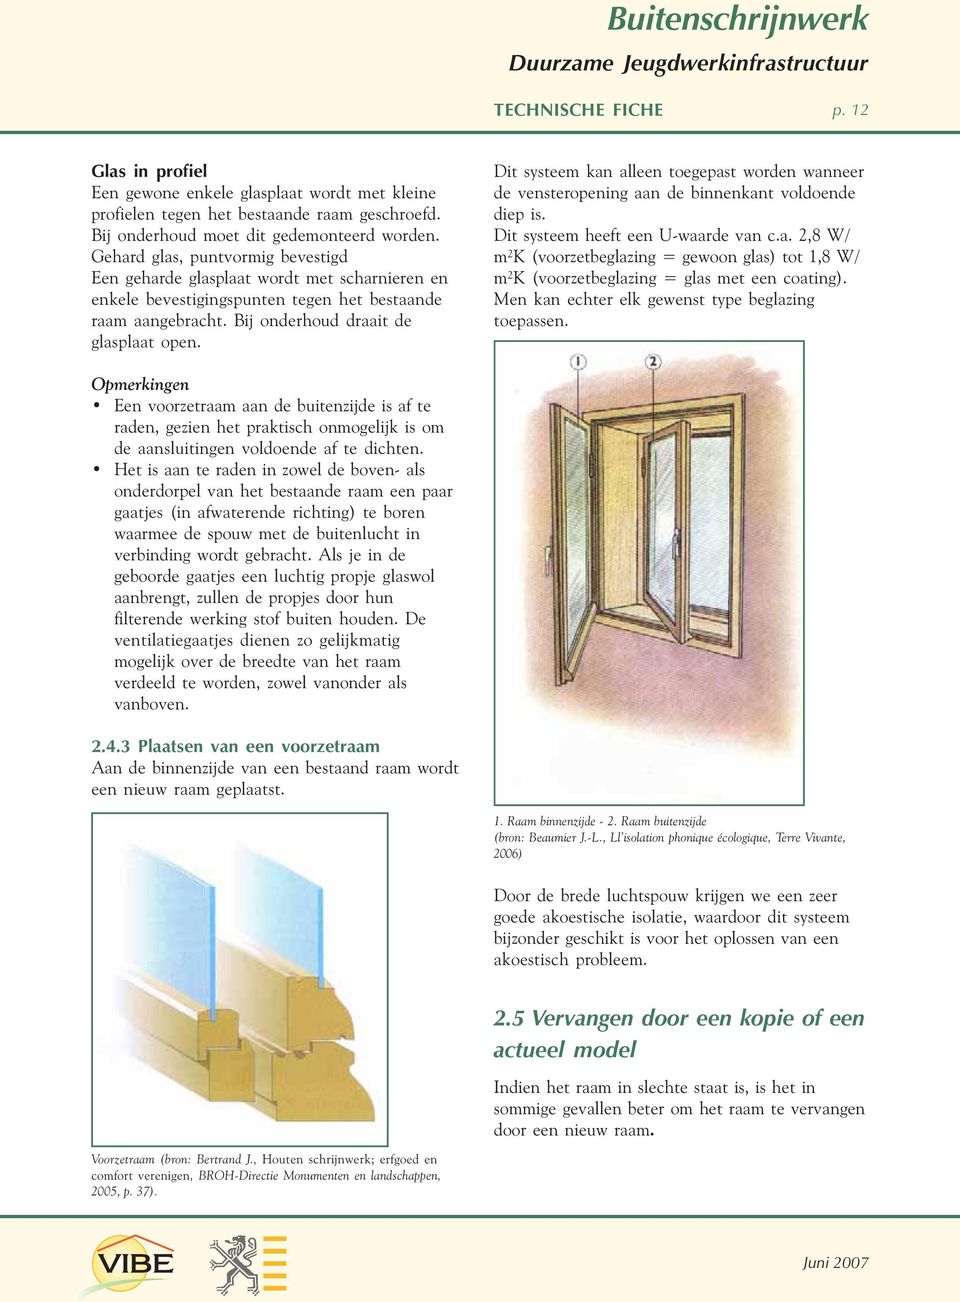 Dit systeem kan alleen toegepast worden wanneer de vensteropening aan de binnenkant voldoende diep is. Dit systeem heeft een U-waarde van c.a. 2,8 W/ m²k (voorzetbeglazing = gewoon glas) tot 1,8 W/ m²k (voorzetbeglazing = glas met een coating).